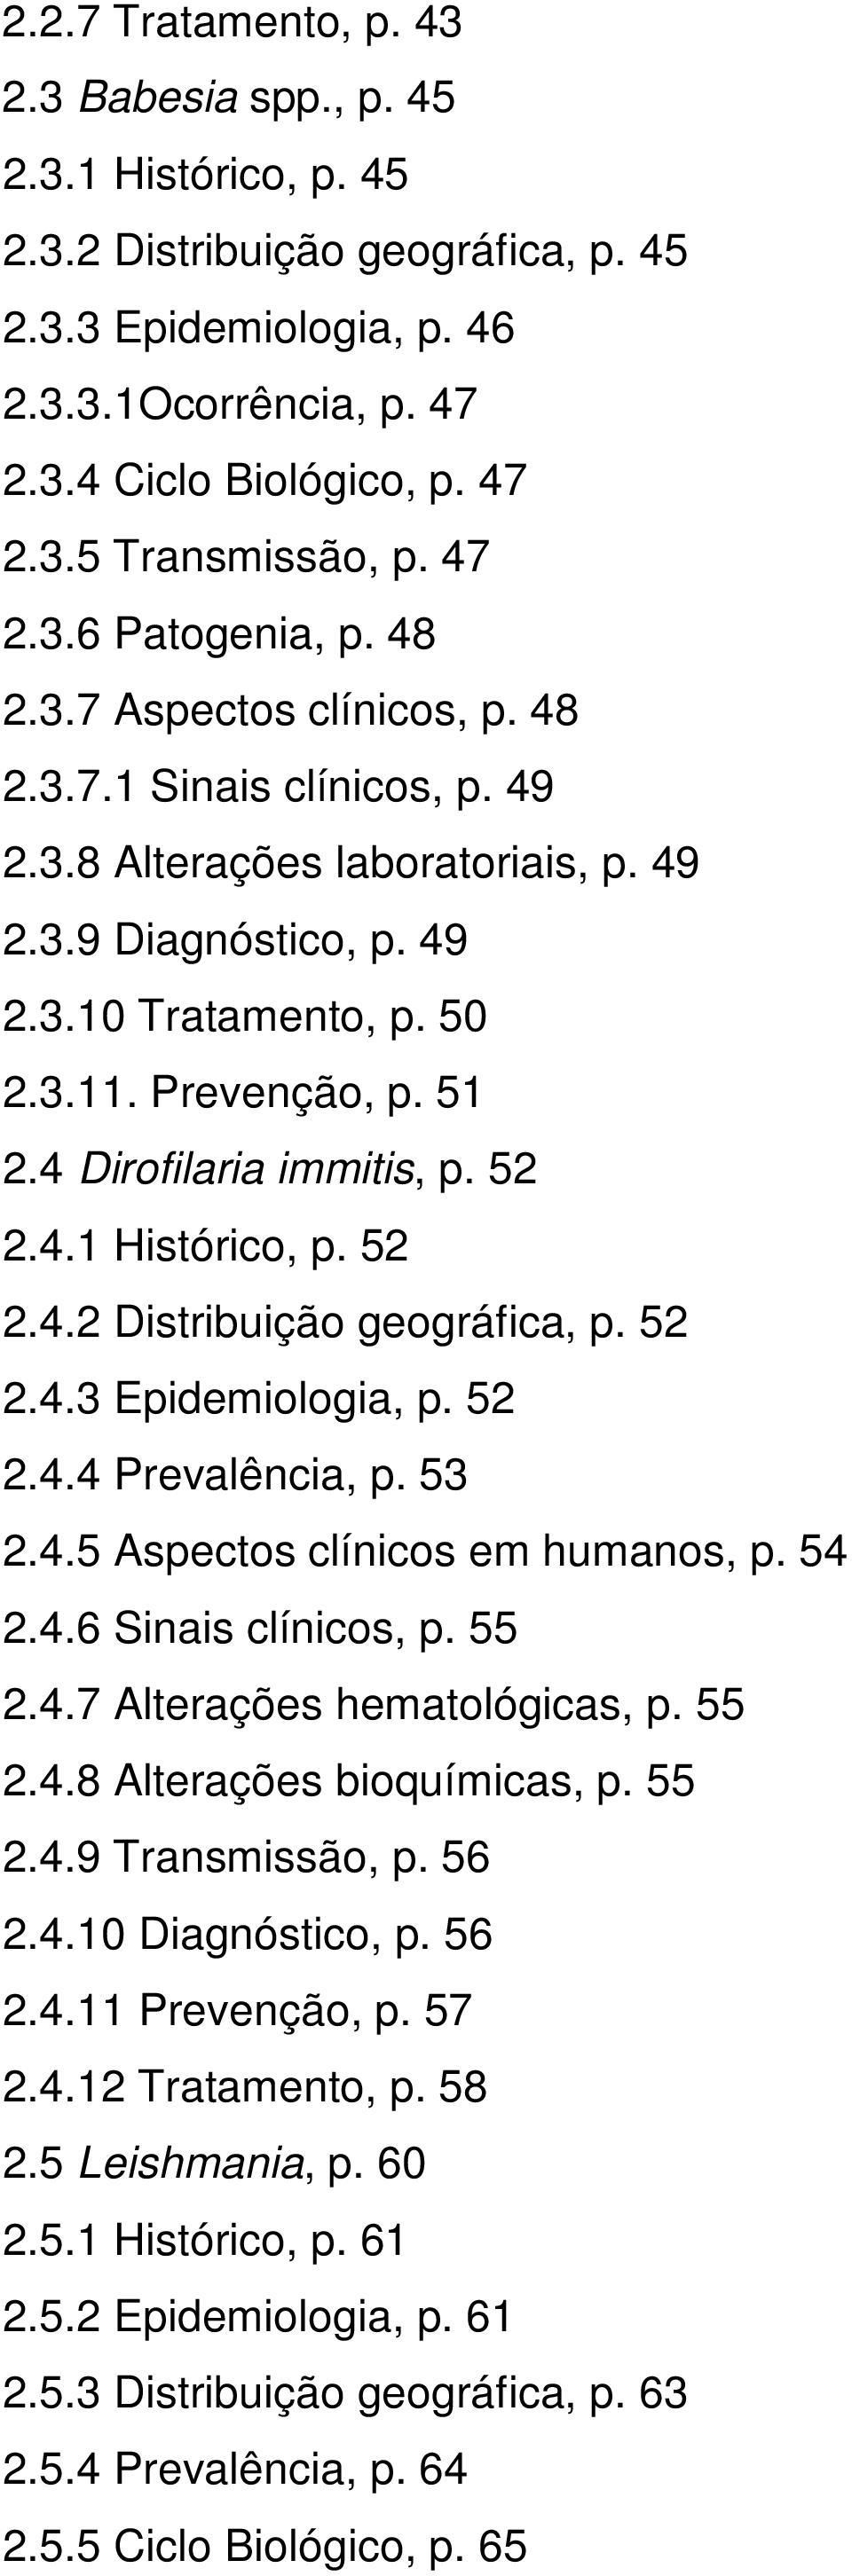 51 2.4 Dirofilaria immitis, p. 52 2.4.1 Histórico, p. 52 2.4.2 Distribuição geográfica, p. 52 2.4.3 Epidemiologia, p. 52 2.4.4 Prevalência, p. 53 2.4.5 Aspectos clínicos em humanos, p. 54 2.4.6 Sinais clínicos, p.